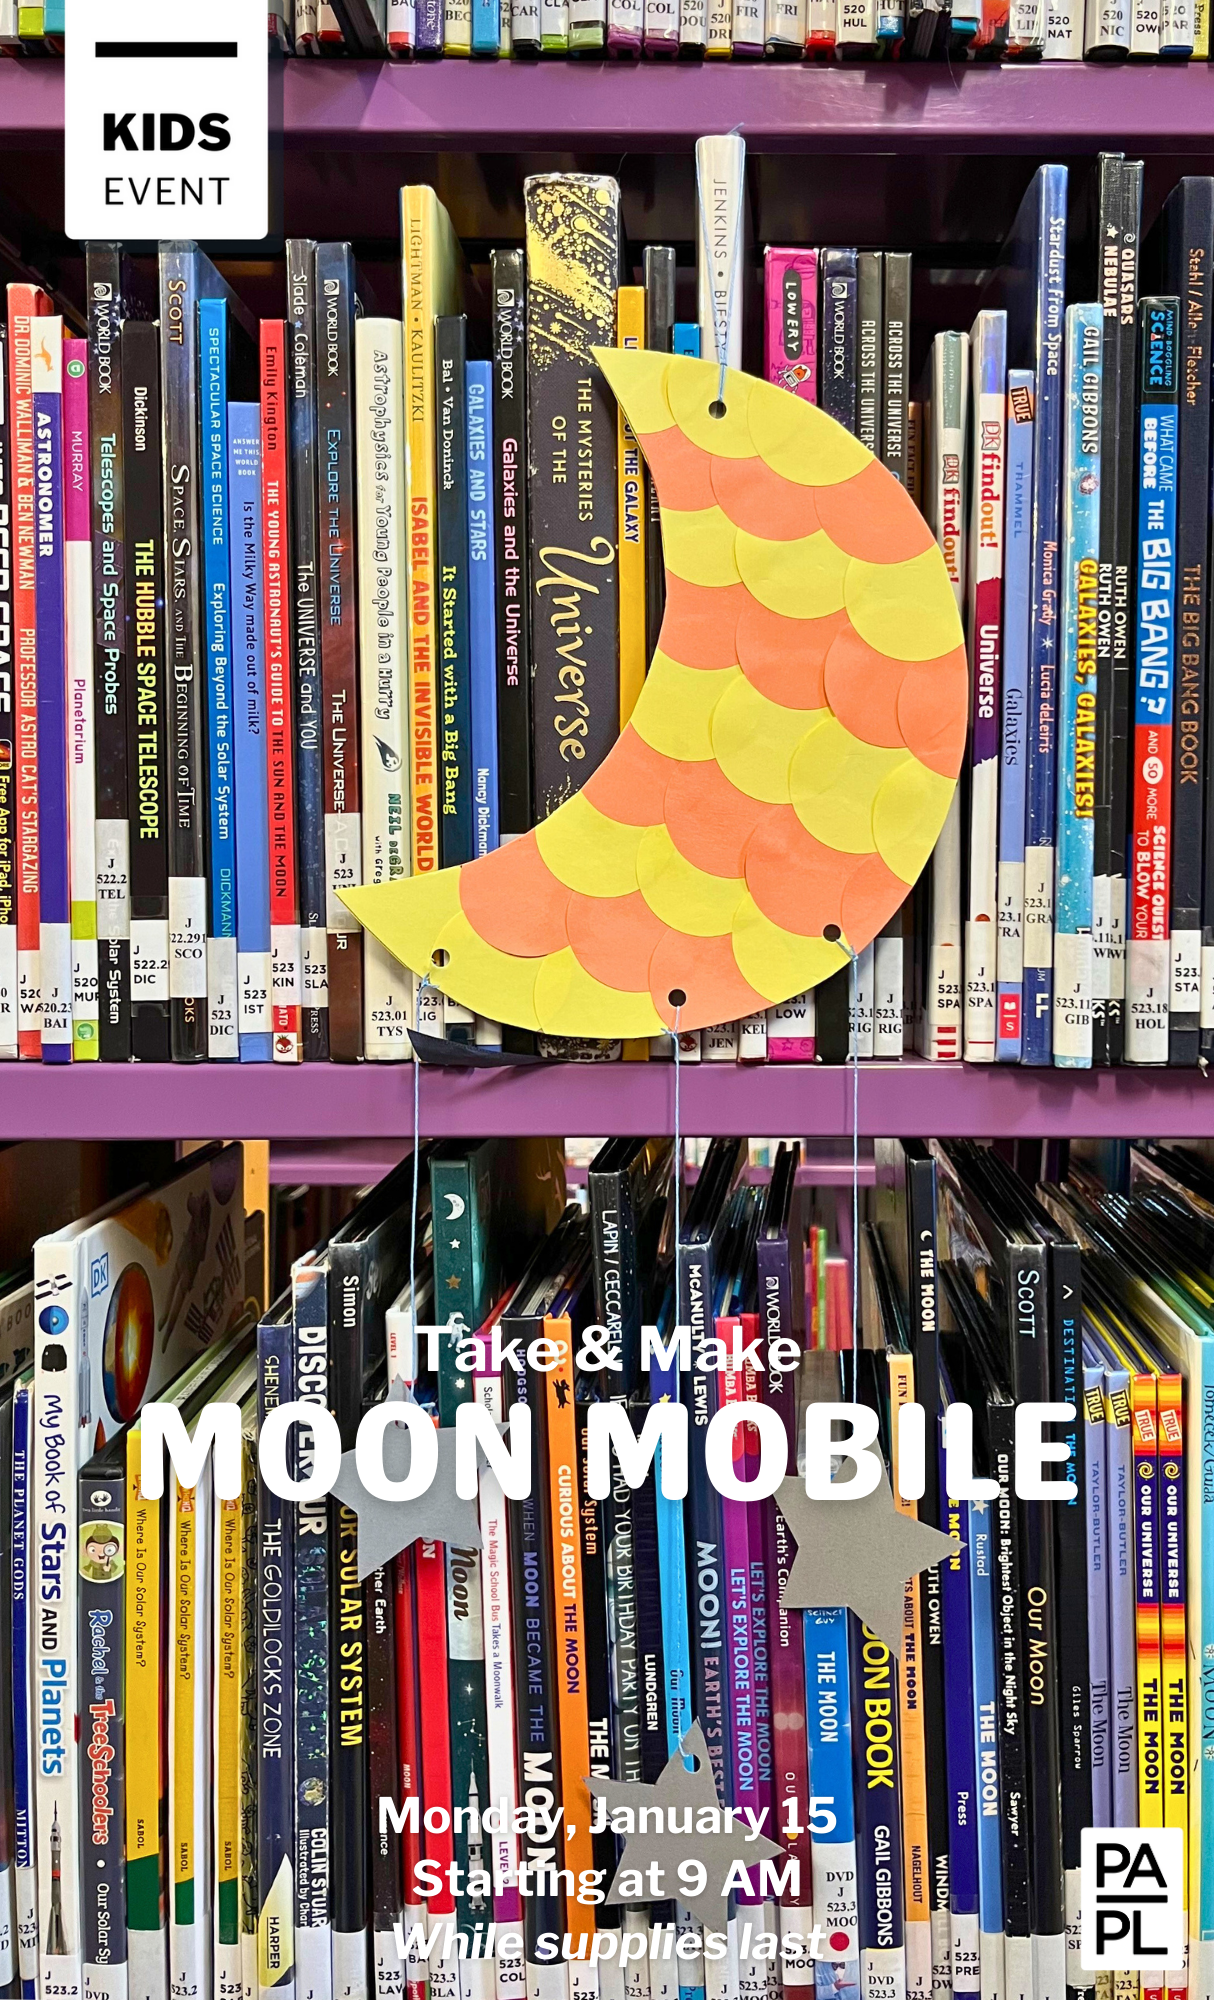 Take & Make Moon Mobile